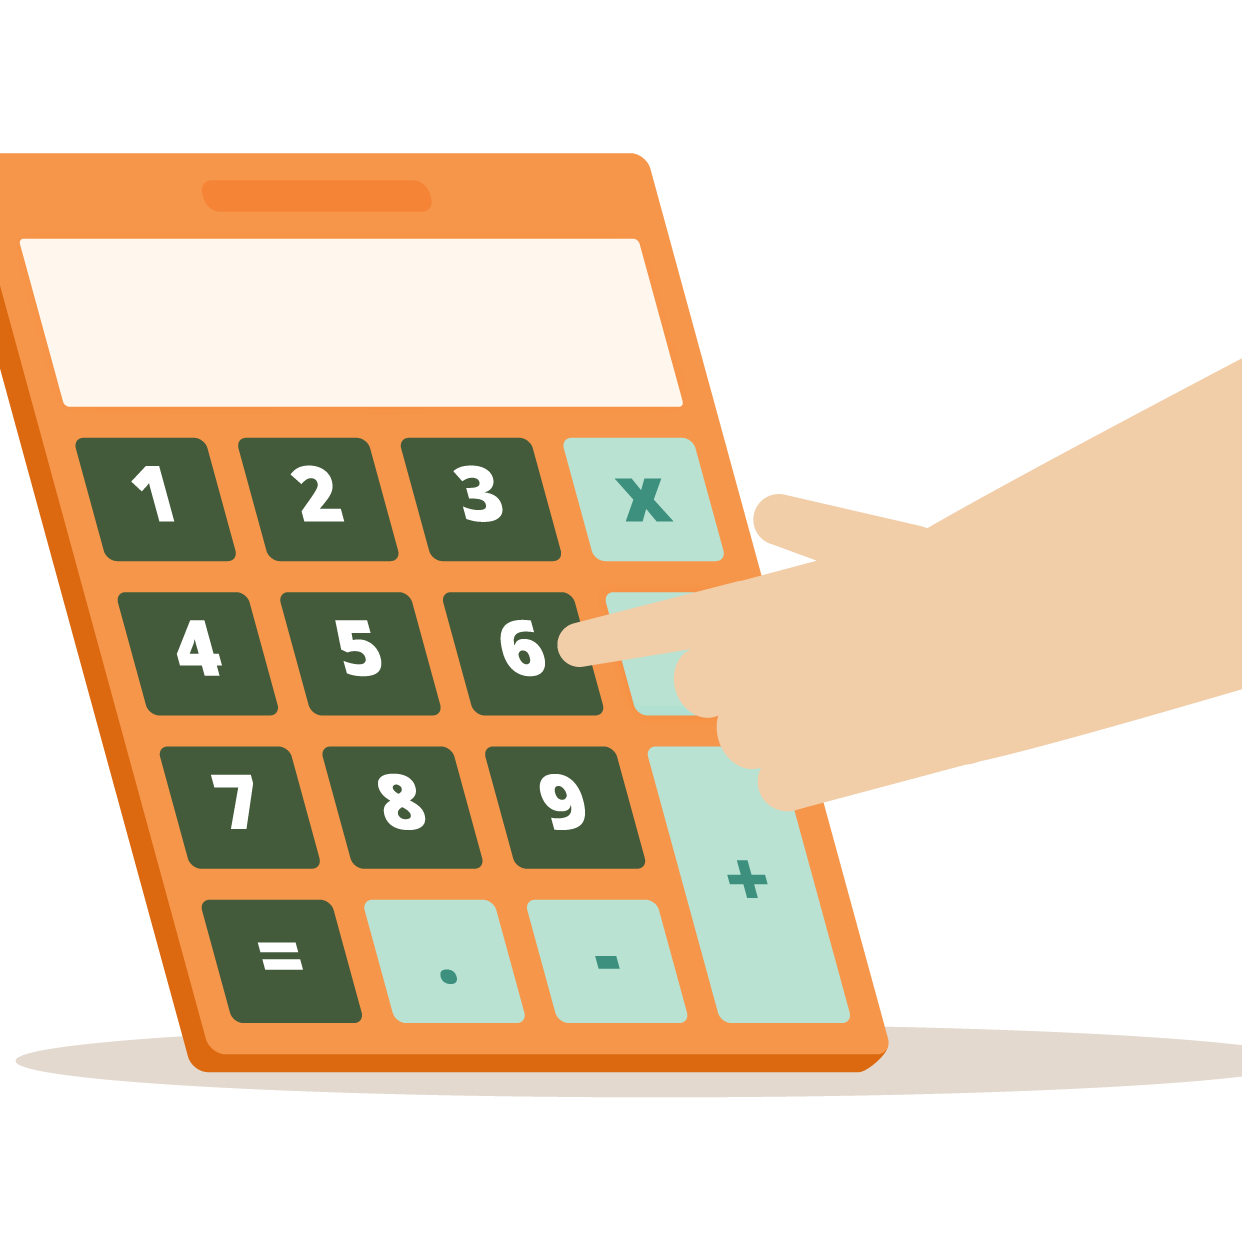 Imagen muestra una mano tocando las teclas de una calculadora